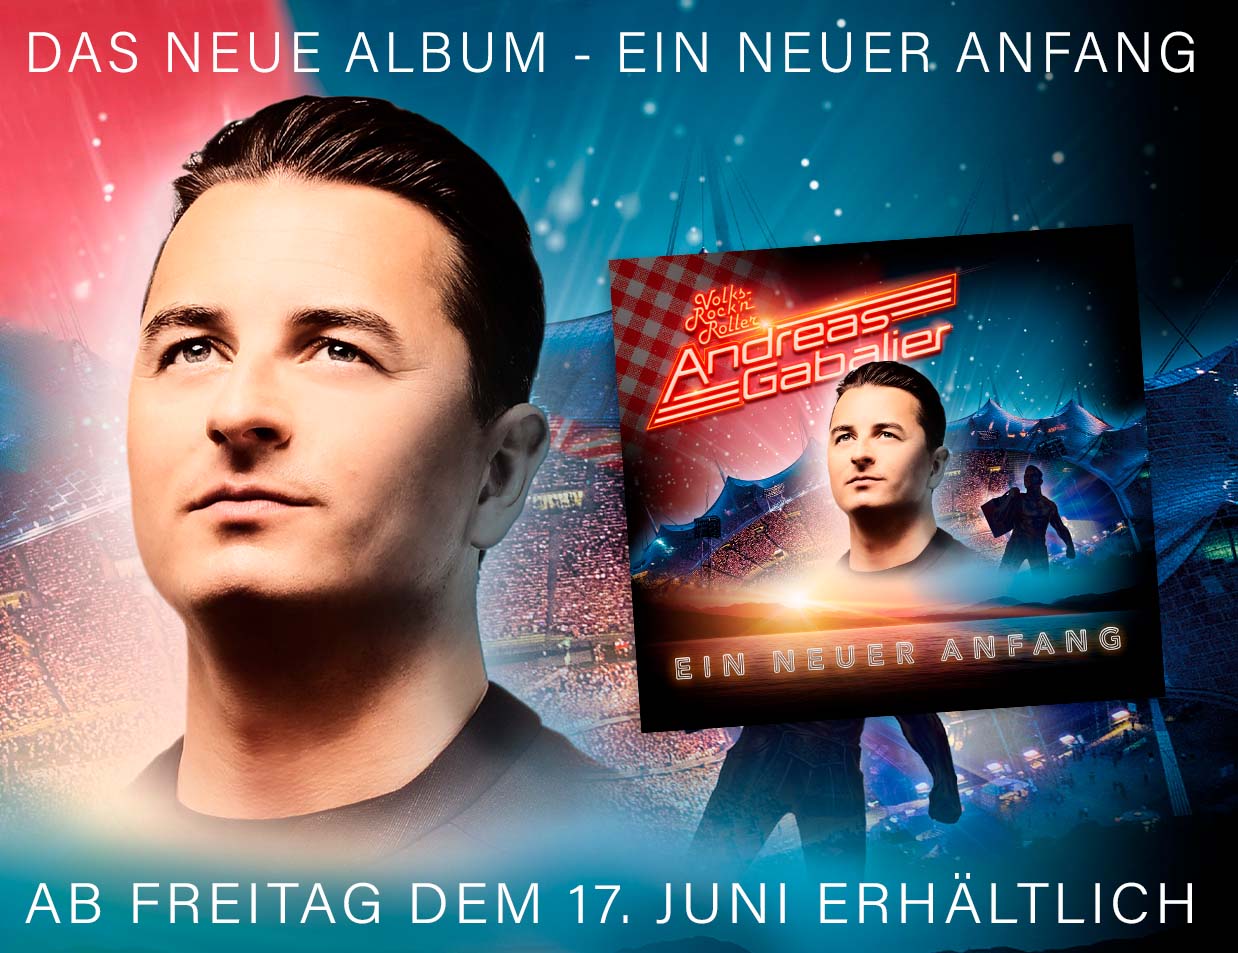 Andreas Gabalier: Neues Album „Ein neuer Anfang“ jetzt überall erhältlich!